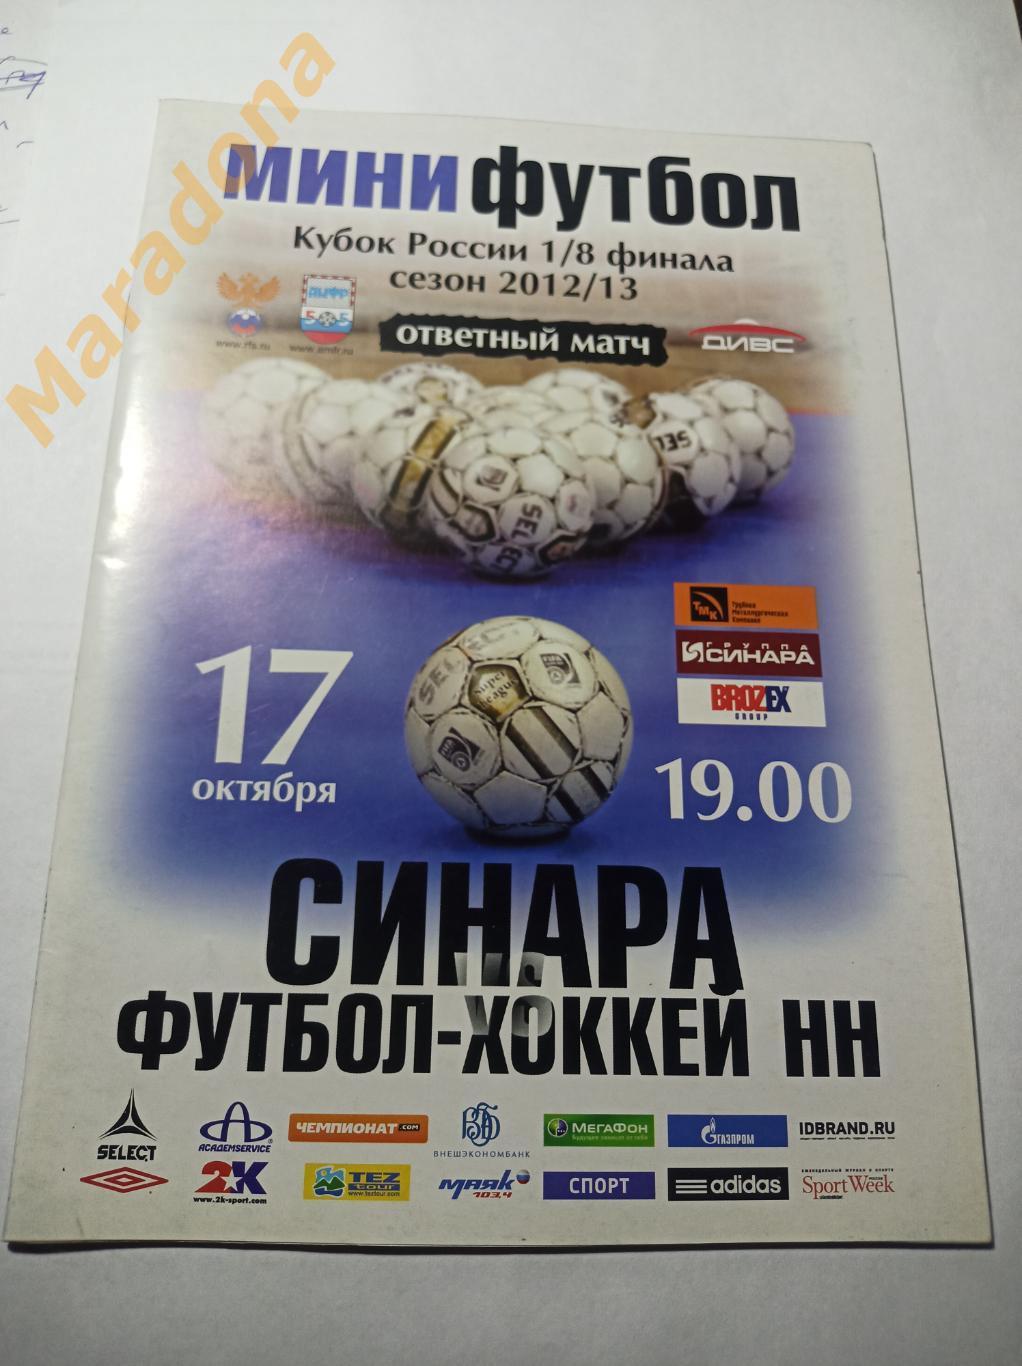 Синара Екатеринбург - Футбол-Хоккей Нижний Новгород 2012/2013 Кубок